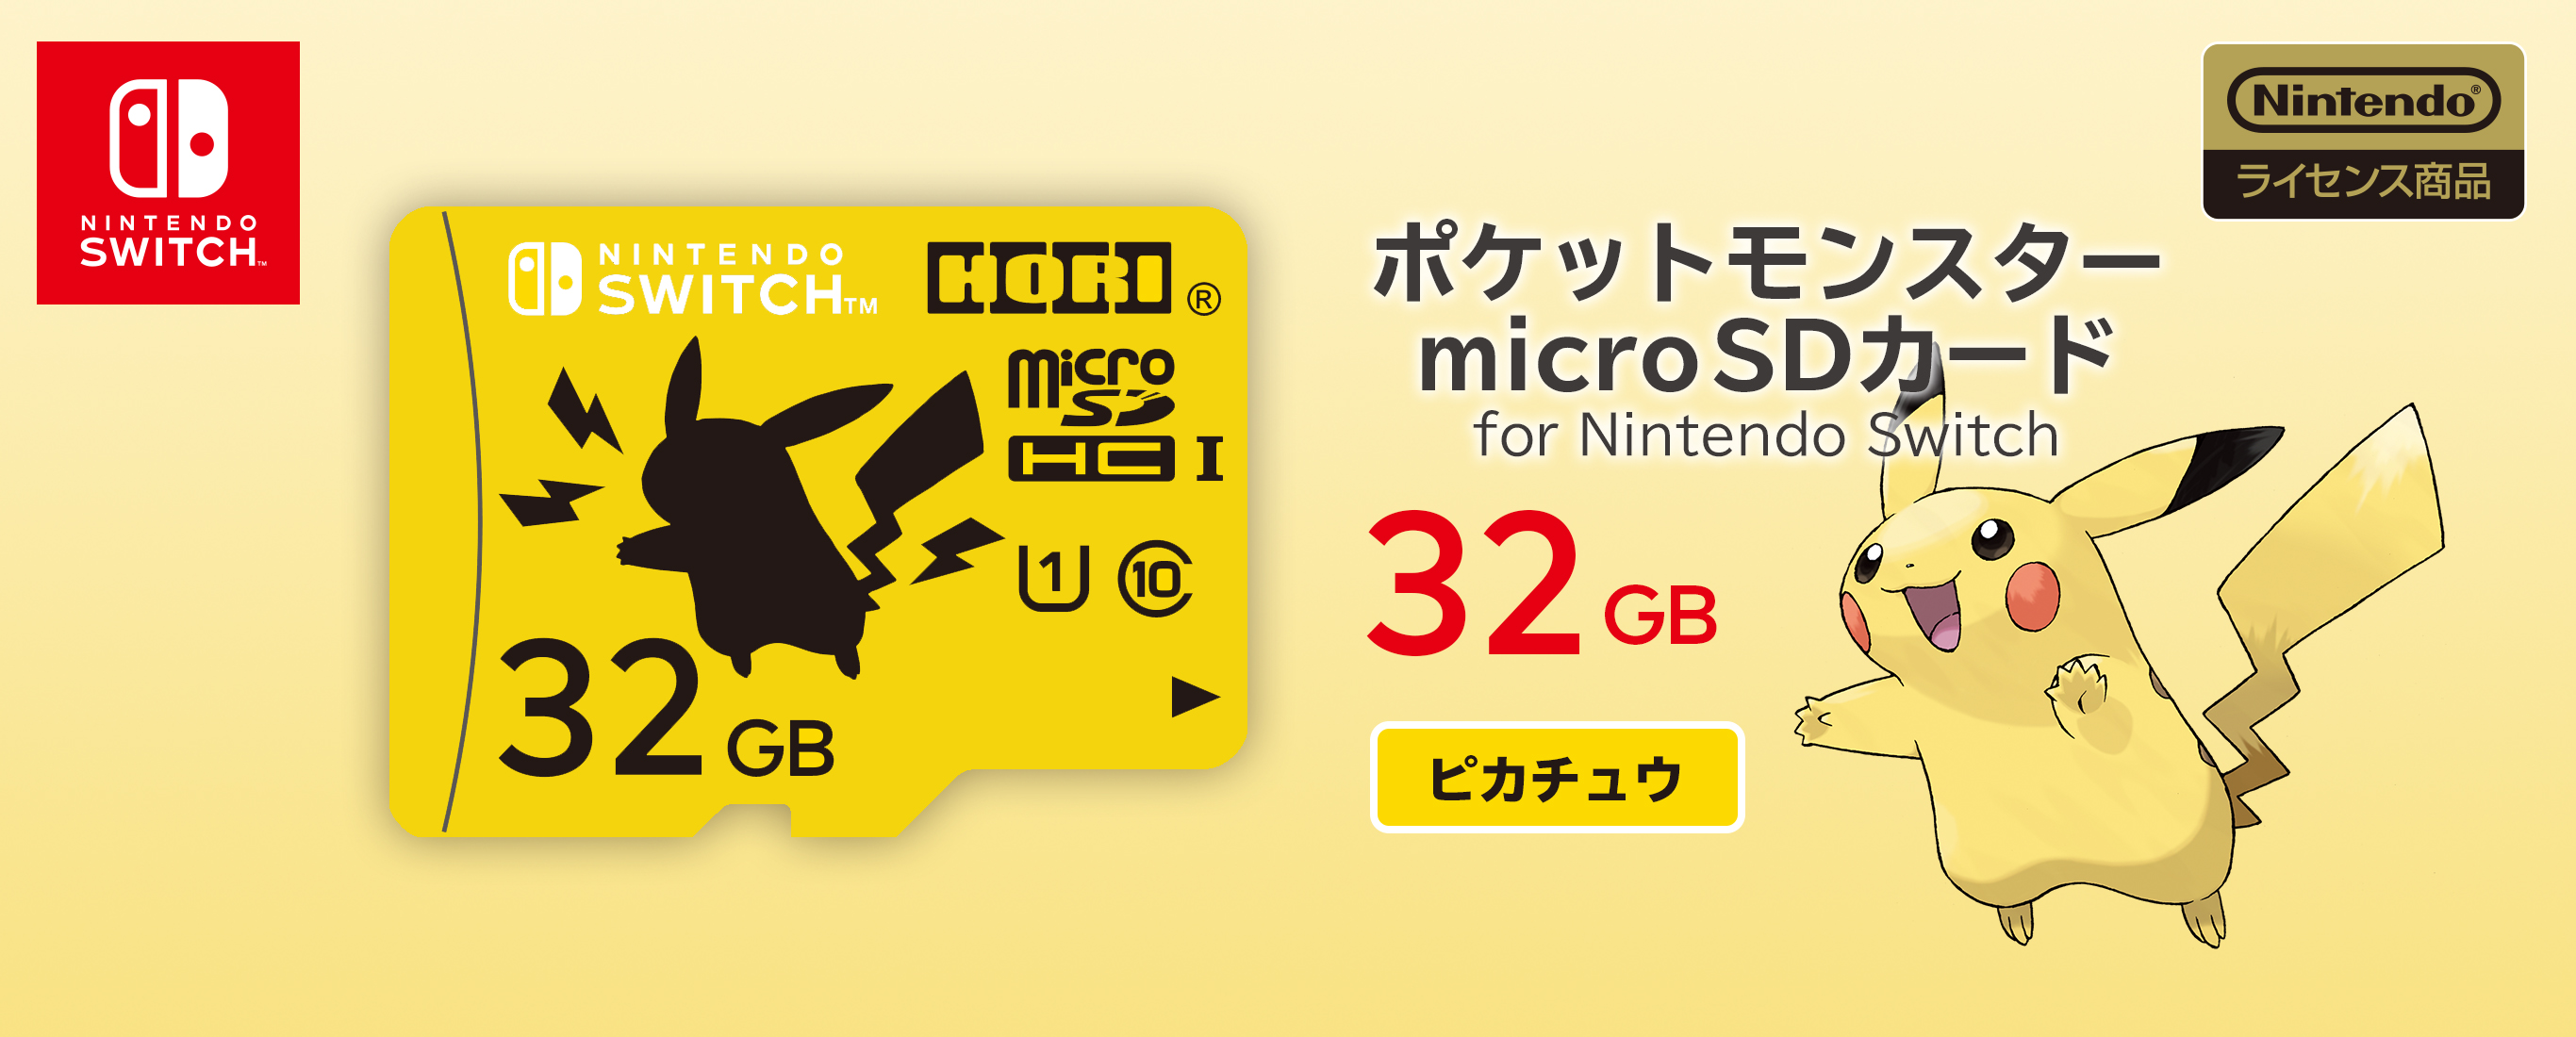 株式会社 Hori ポケットモンスター Microsdカード For Nintendo Switch 32gb ピカチュウ